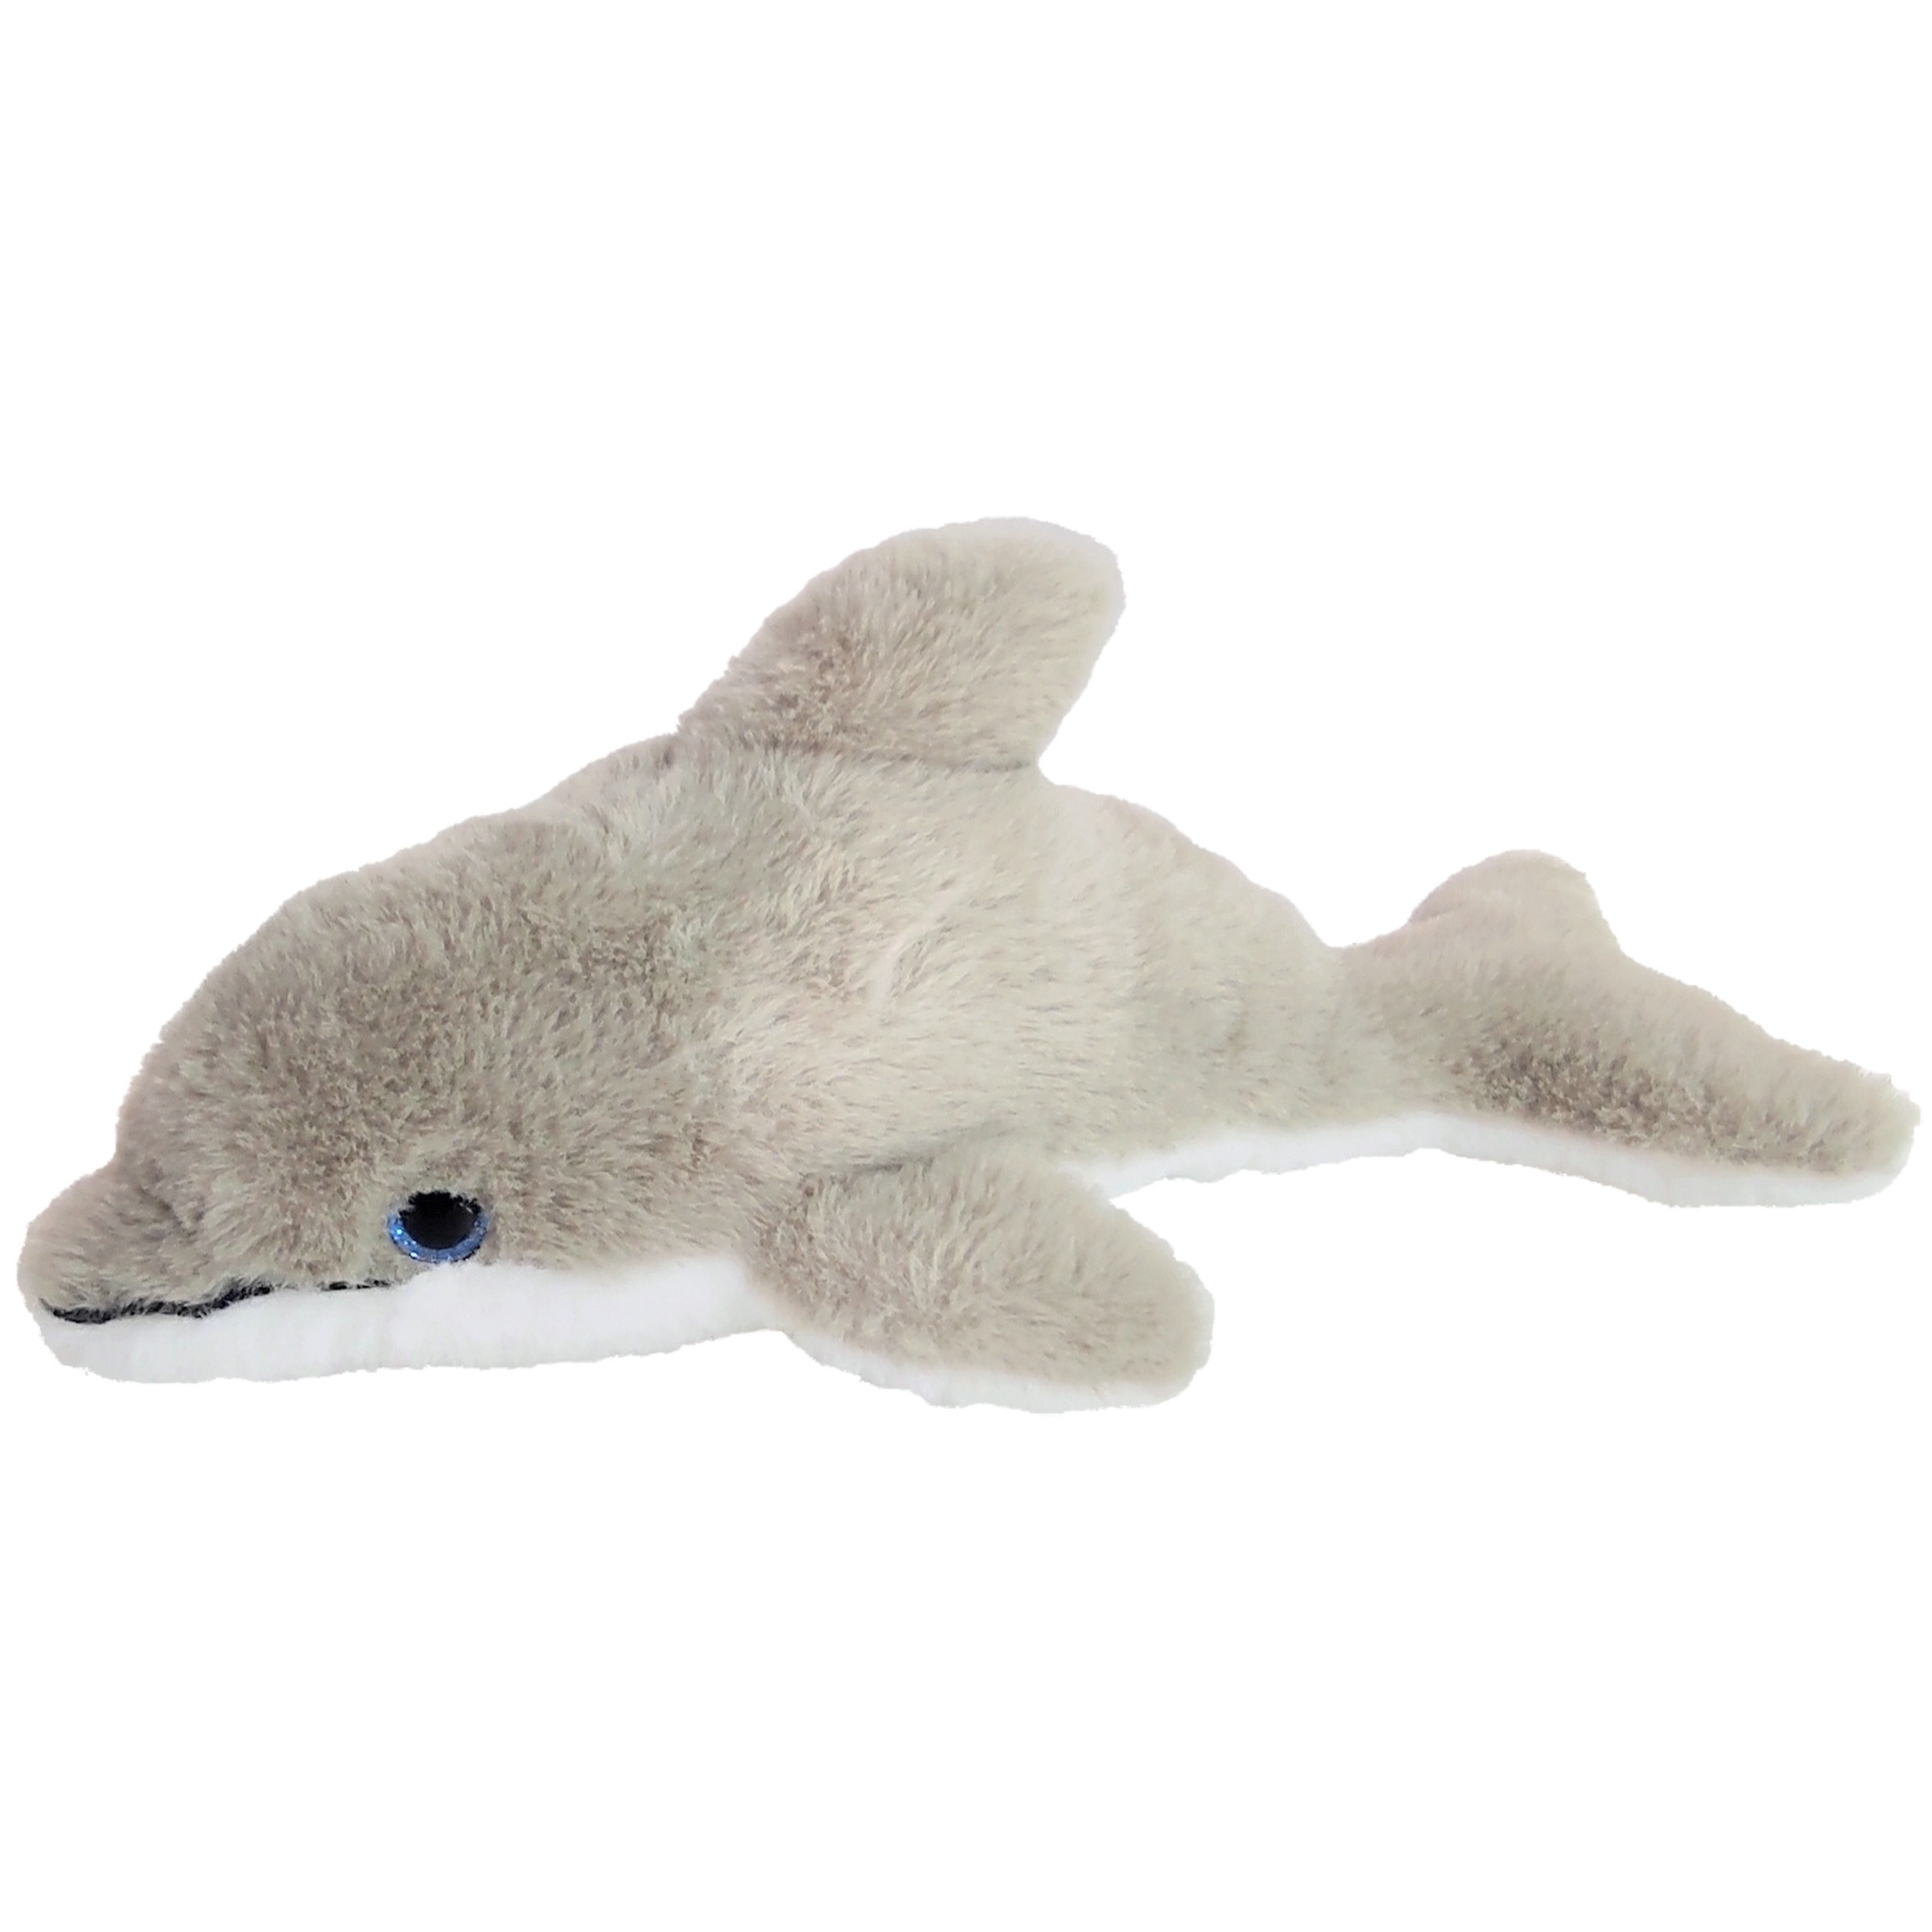 Inware pluche dolfijn knuffeldier grijs-wit zwemmend 26 cm